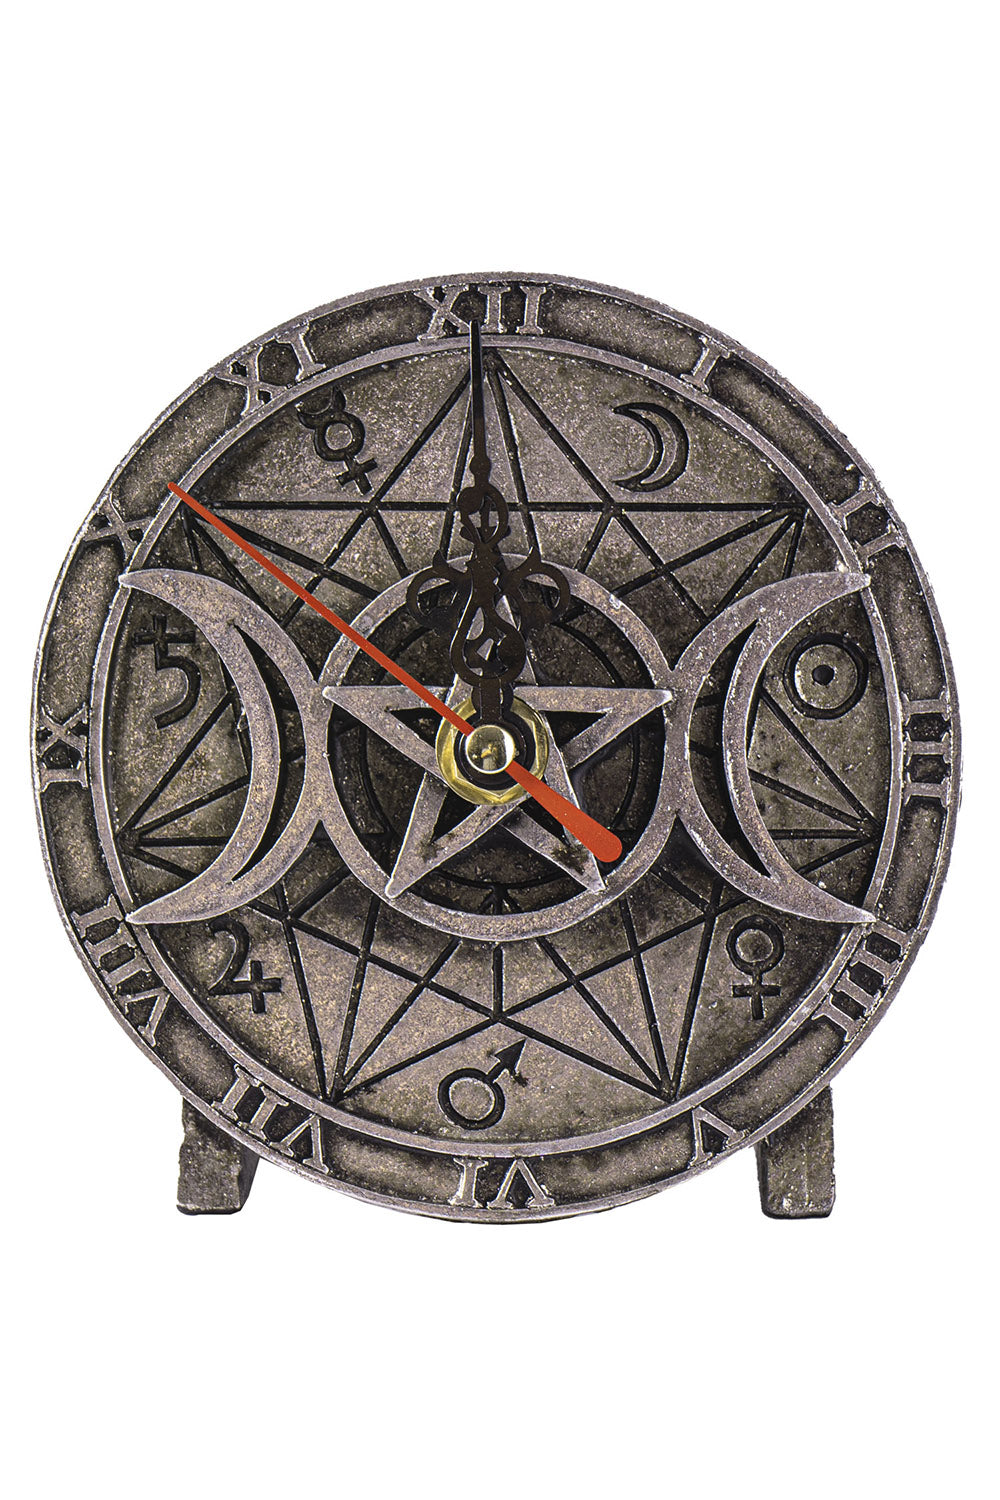 Wiccan Desk Clock